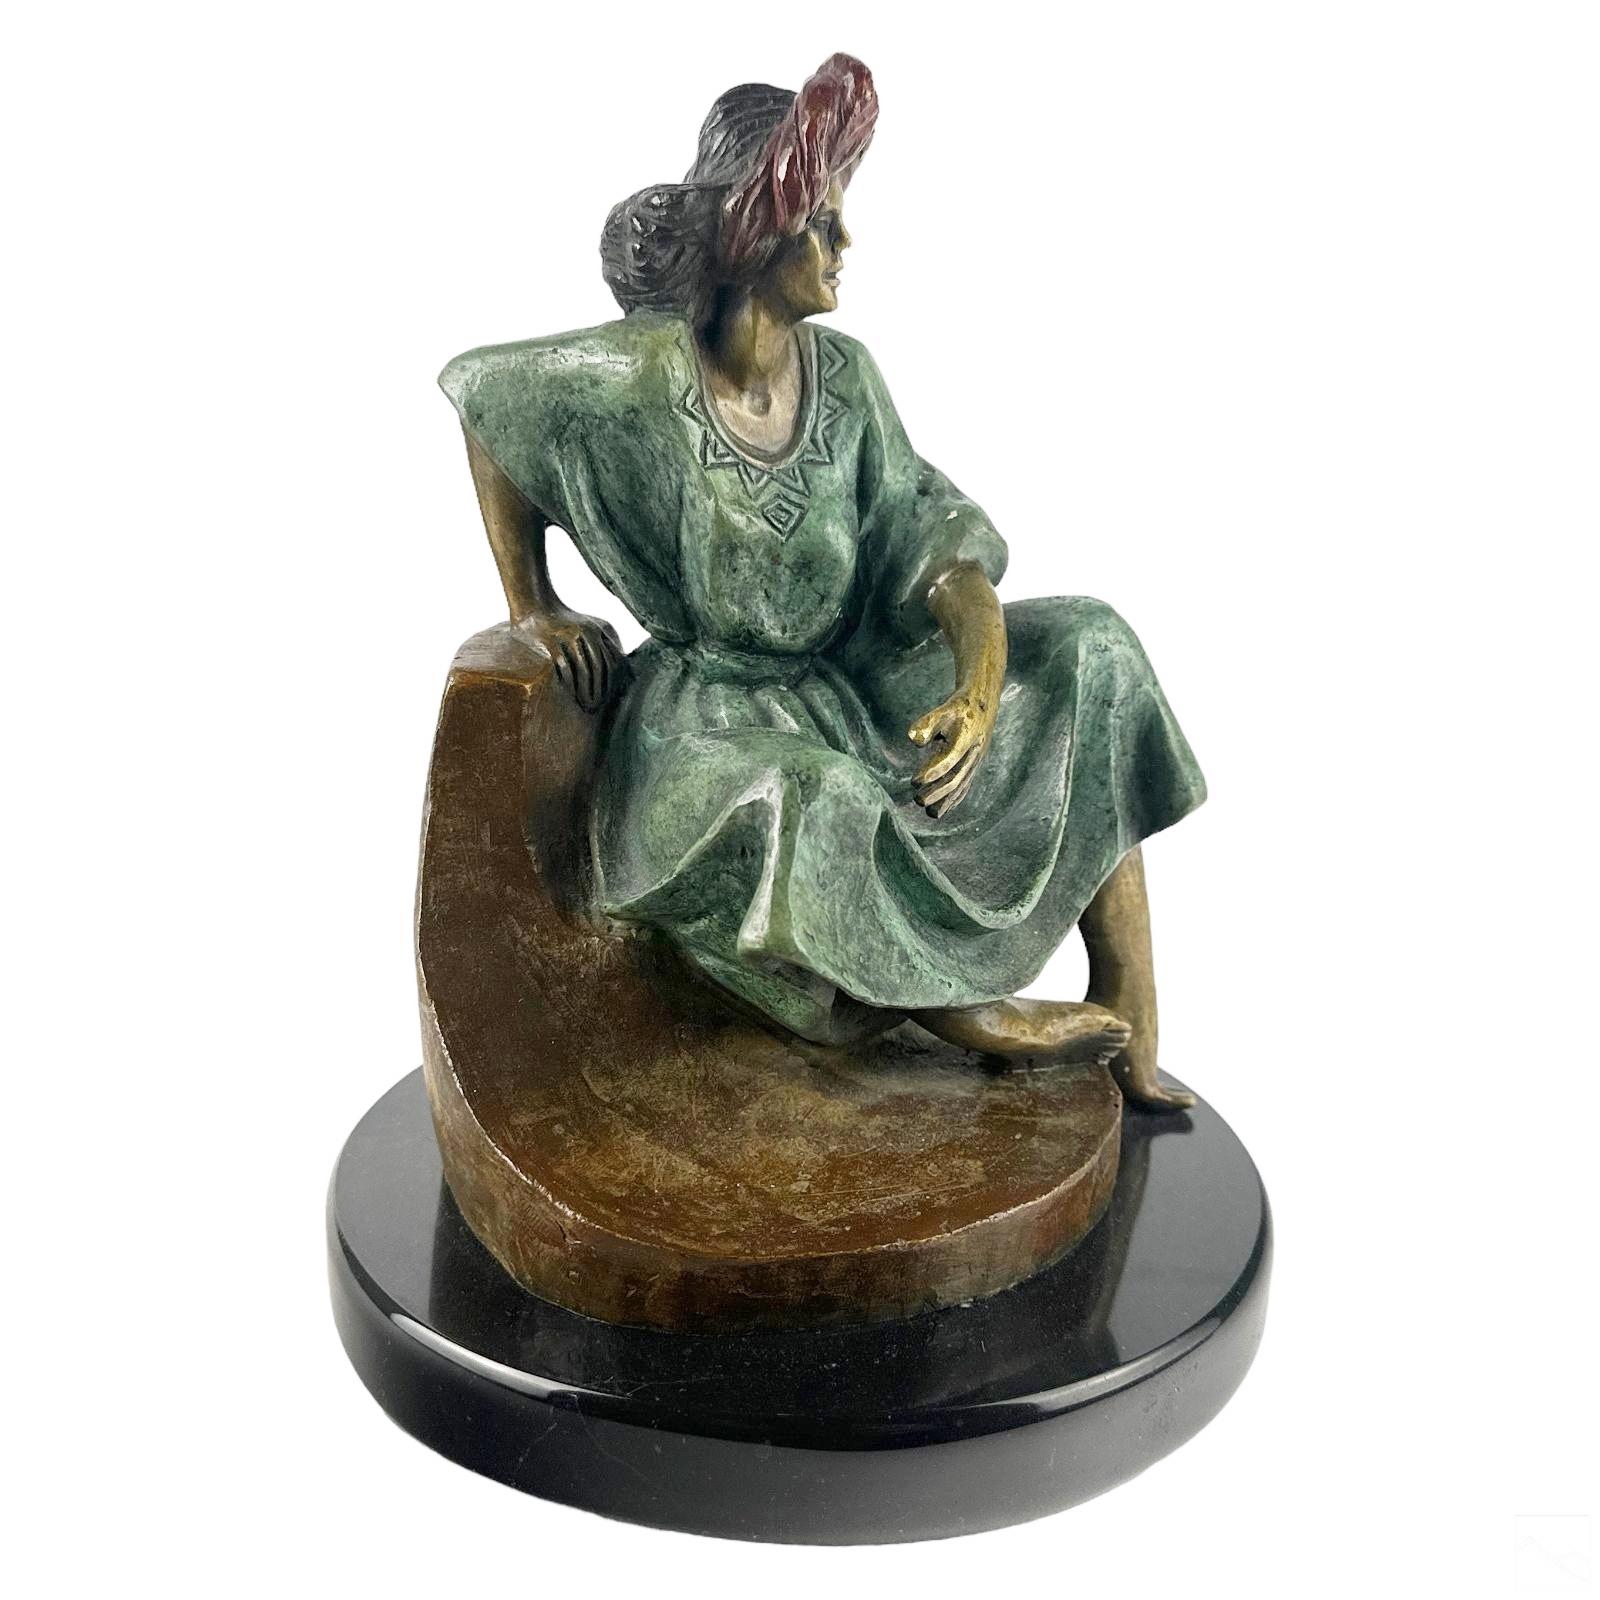 Victor Gutierrez (Mexikaner, geboren 1950). Eine limitierte Auflage einer kalt bemalten Bronzestatue. Ein figurales Werk in modernem Stil, das eine sitzende weibliche Figur in traditioneller Mestizo-Tracht mit roter Kopfbedeckung auf einem